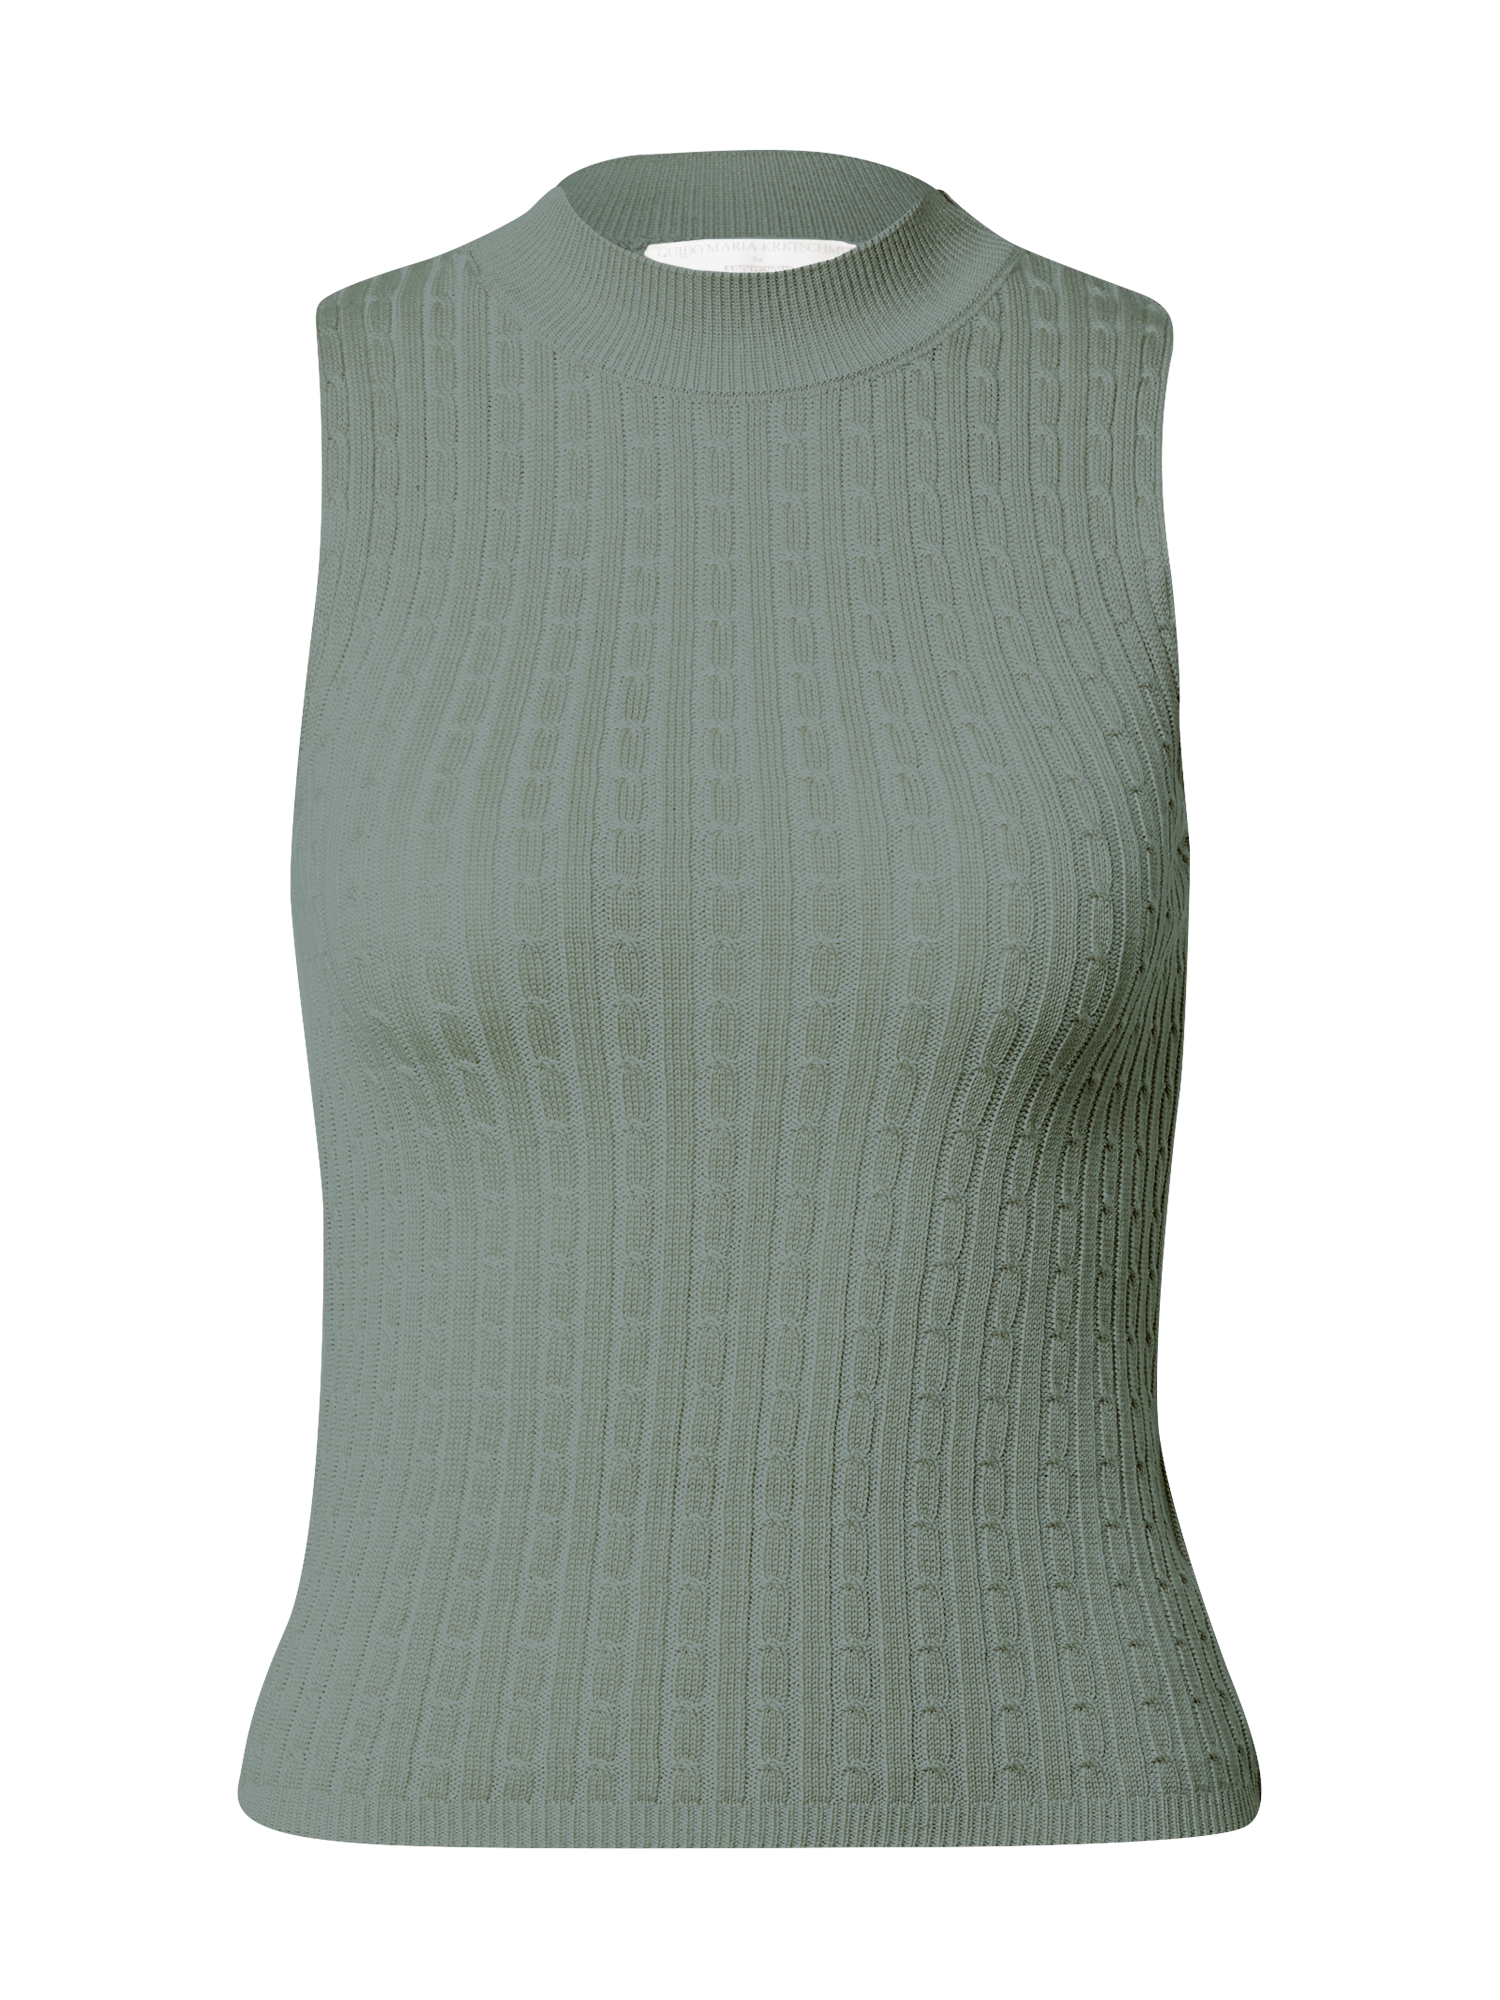 Abbigliamento Donna Guido Maria Kretschmer Collection Top in maglia Dunja in Verde 